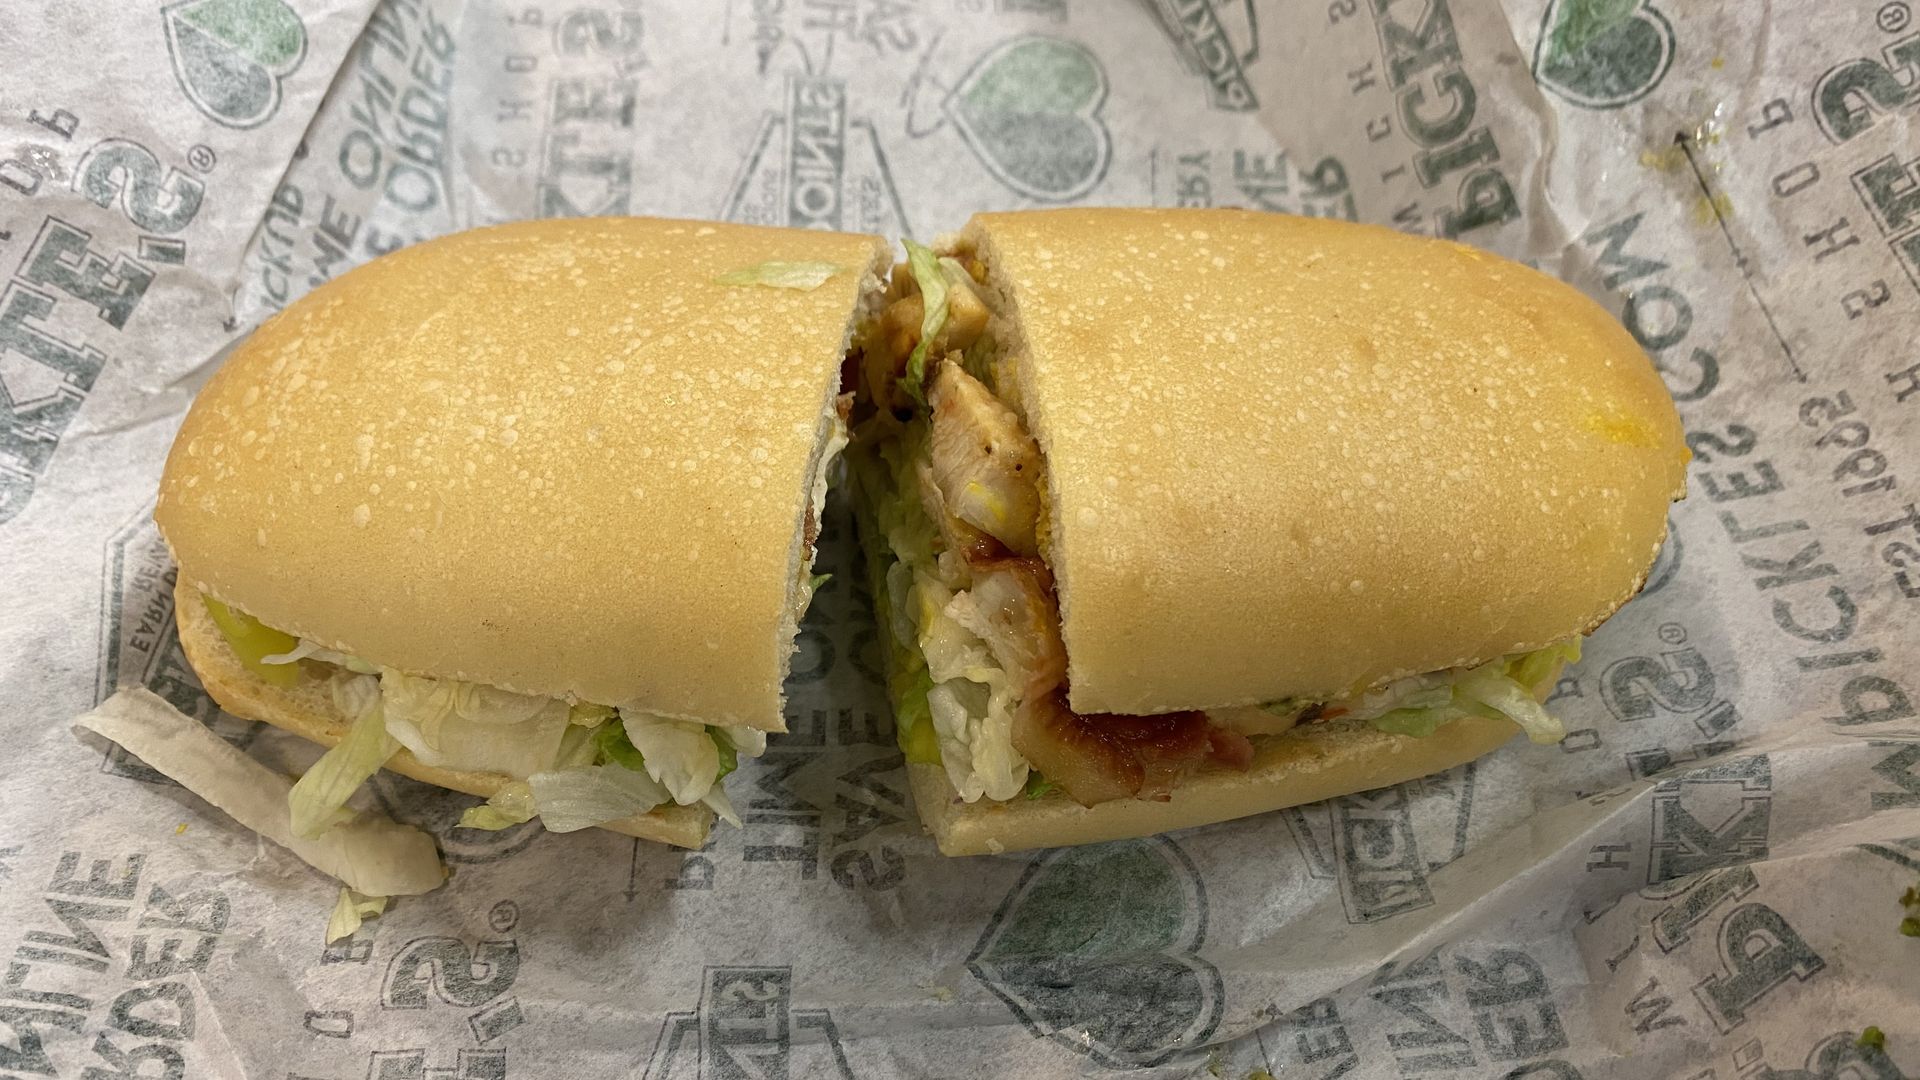 A sub sandwich cut in half.